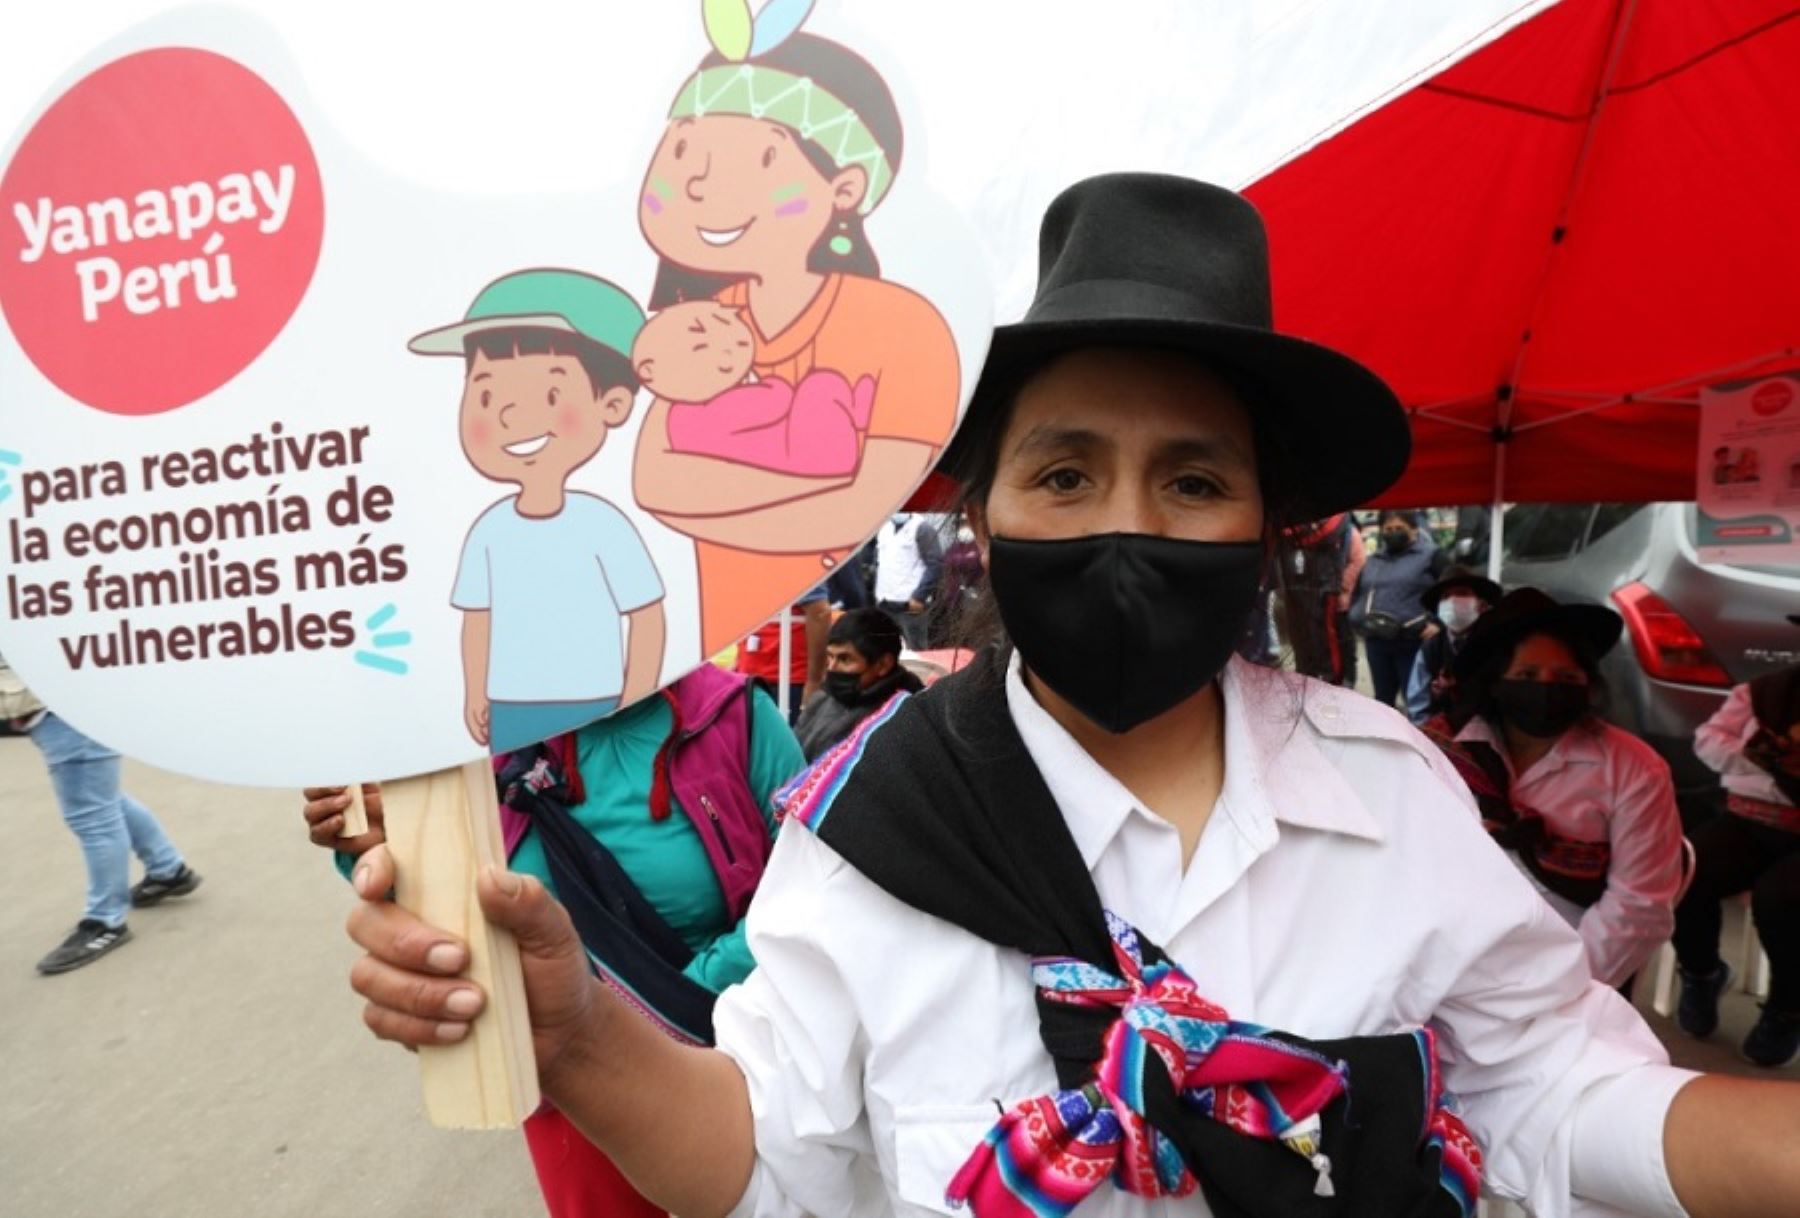 El Ministerio de Desarrollo e Inclusión Social informó que, a la fecha, más de 6.4 millones de mujeres de todo el país han cobrado el apoyo económico Yanapay Perú, subsidio que contribuye a aliviar la economía de las personas en situación de pobreza, pobreza extrema y vulnerabilidad ante el impacto del covid-19.